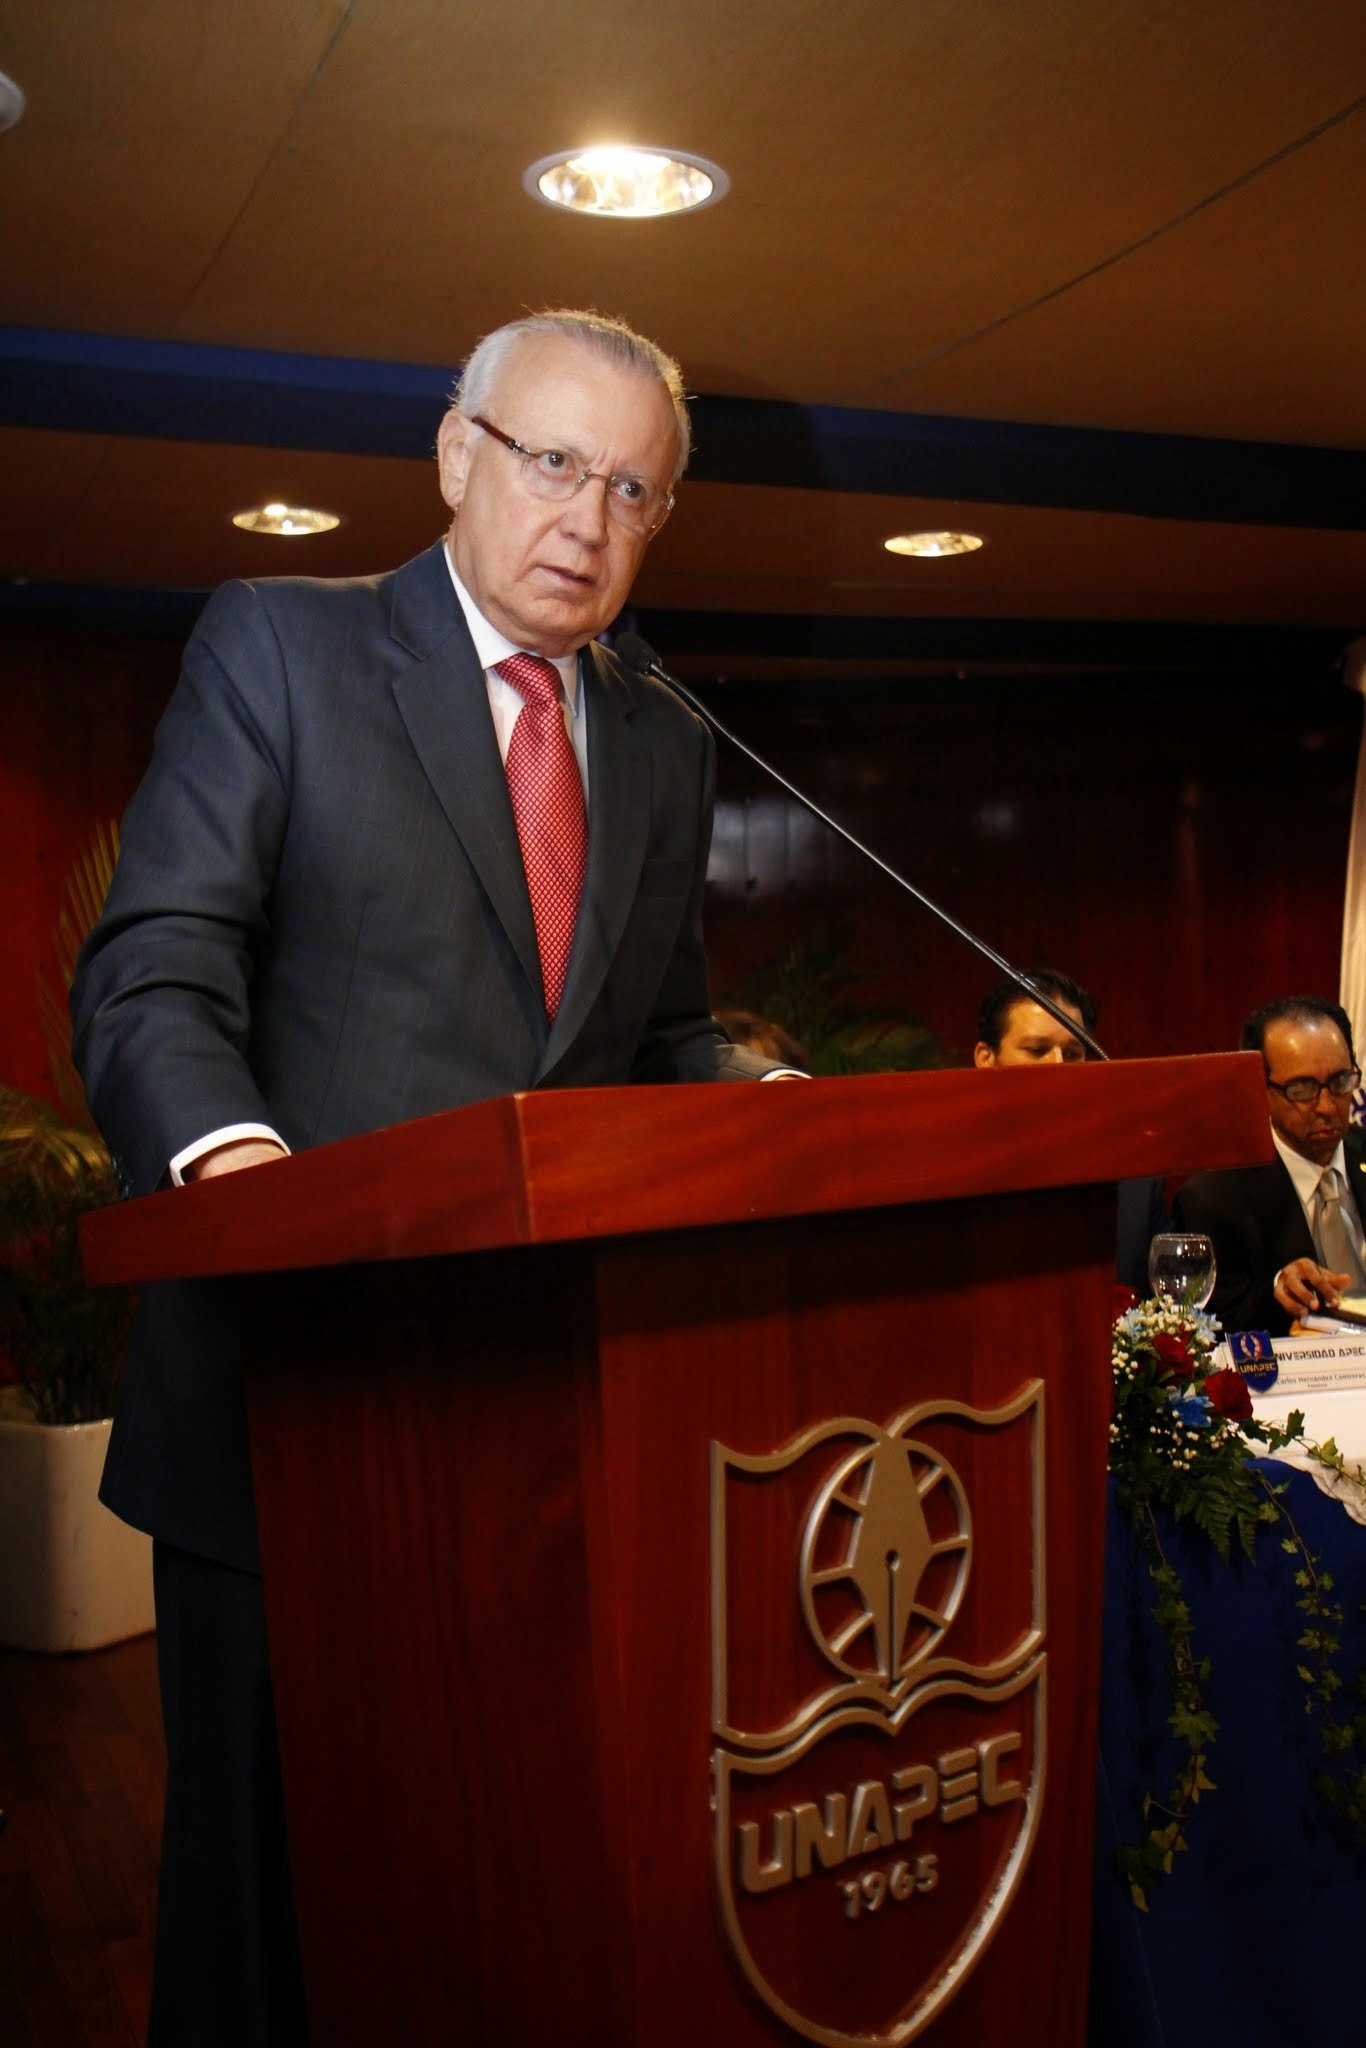 Rafael Alburquerque, Ex Vicepresidente de la República Dominicana, mientras realizaba su disertación en el Foro "Economía y Desarrollo".